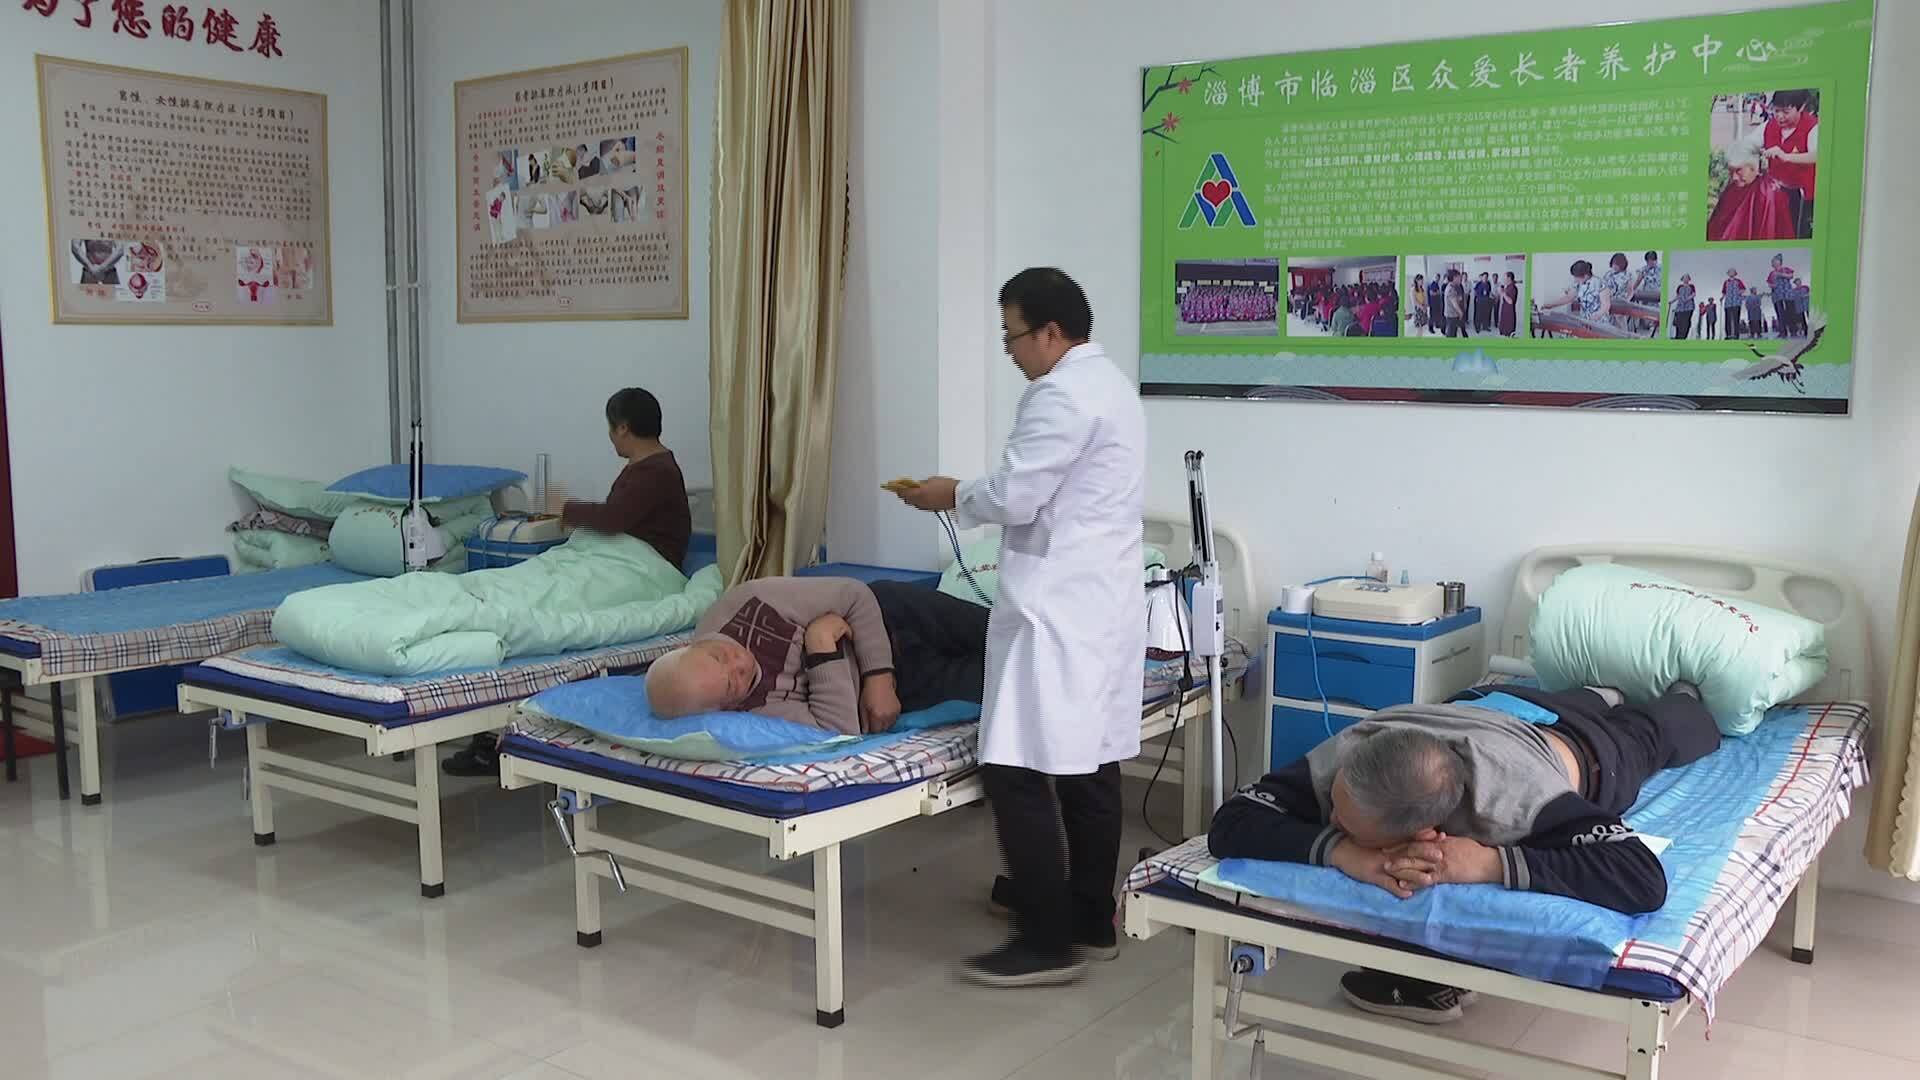 分级护理 提高待遇 淄博市探索建立长期护理保险制度 已累计支付1.3亿元